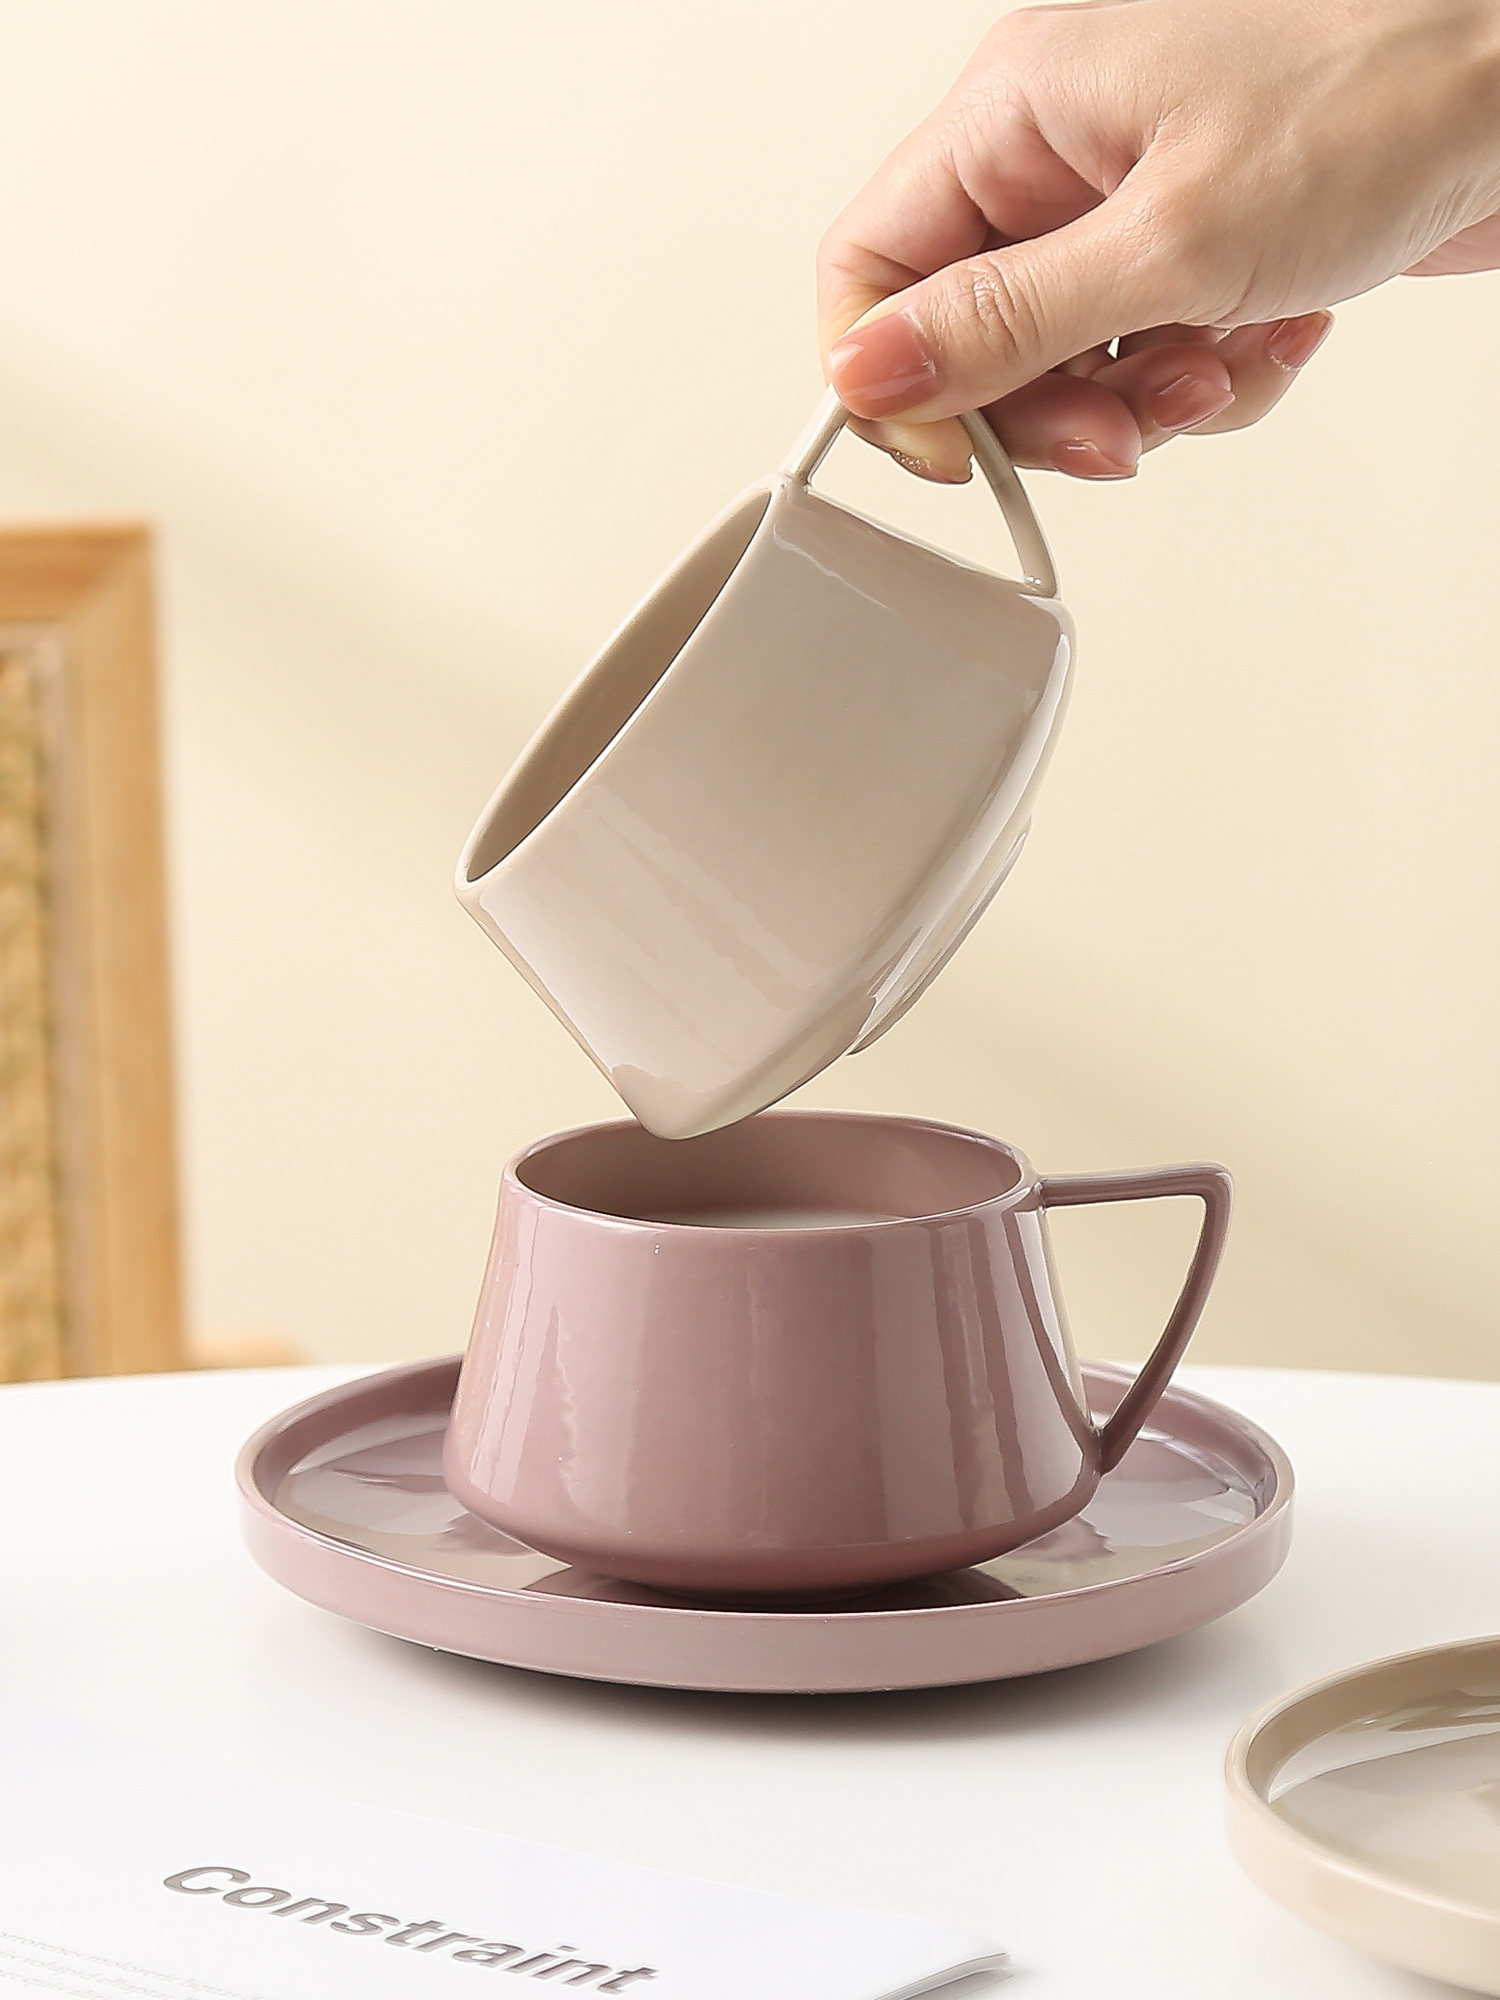 北歐風情簡約陶瓷咖啡杯高顏值杯碟組合單人或情侶使用皆宜